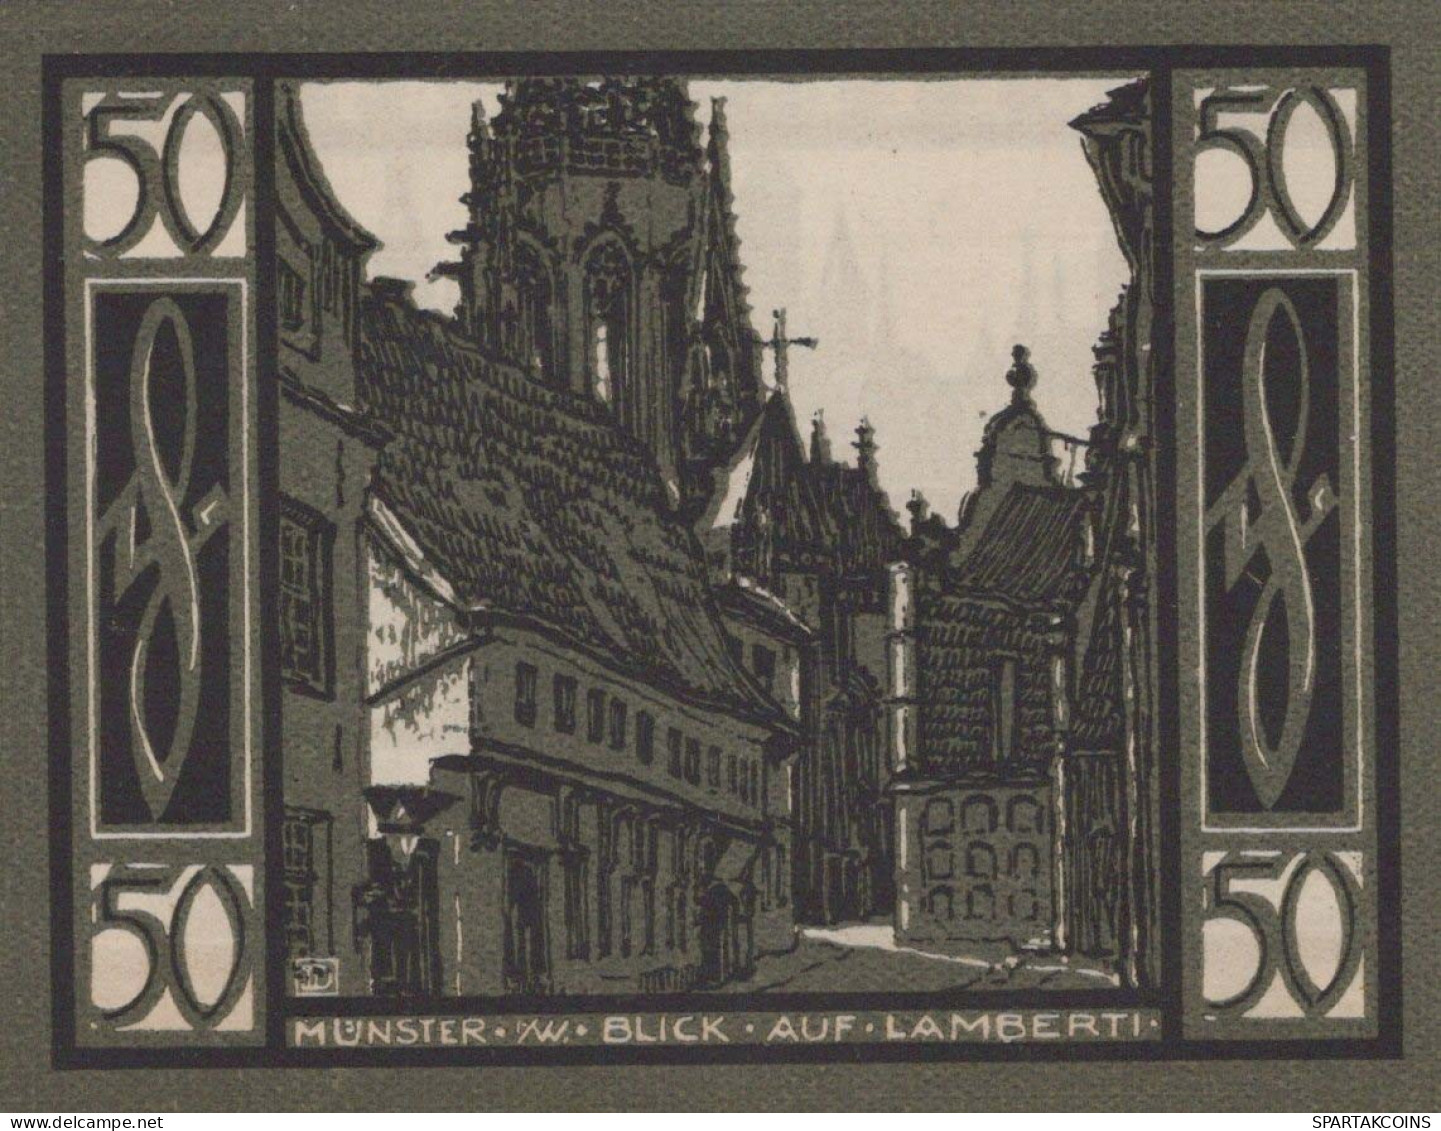 50 PFENNIG 1921 Stadt MÜNSTER IN WESTFALEN Westphalia DEUTSCHLAND Notgeld #PF891 - [11] Local Banknote Issues